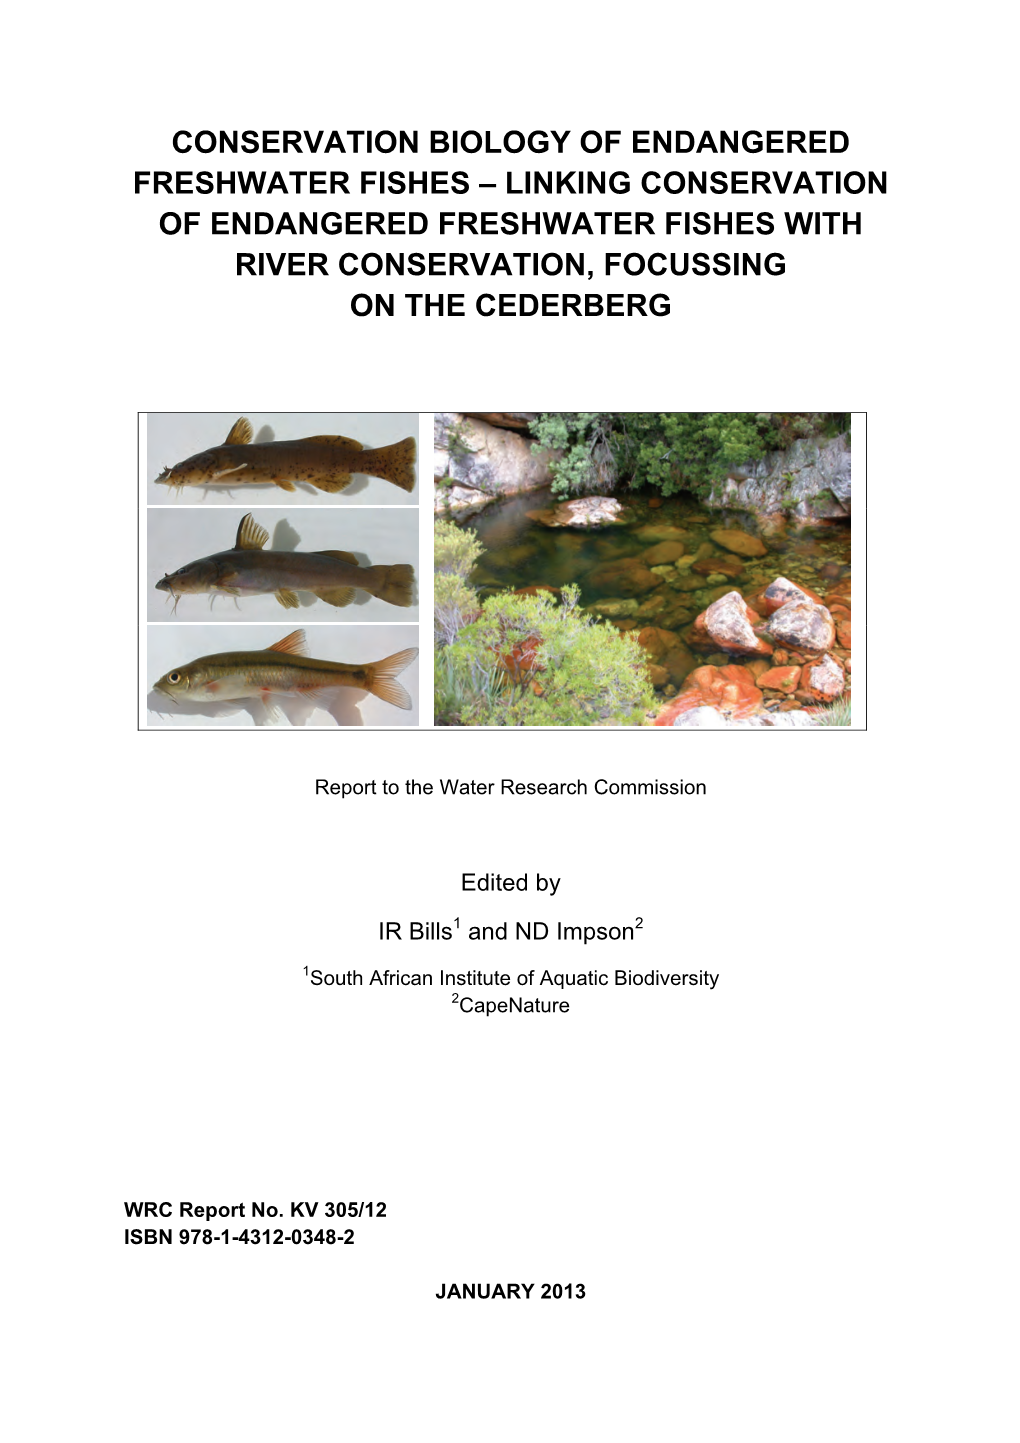 Conservation Biology of Endangered Freshwater Fishes – Linking Conservation of Endangered Freshwater Fishes with River Conservation, Focussing on the Cederberg